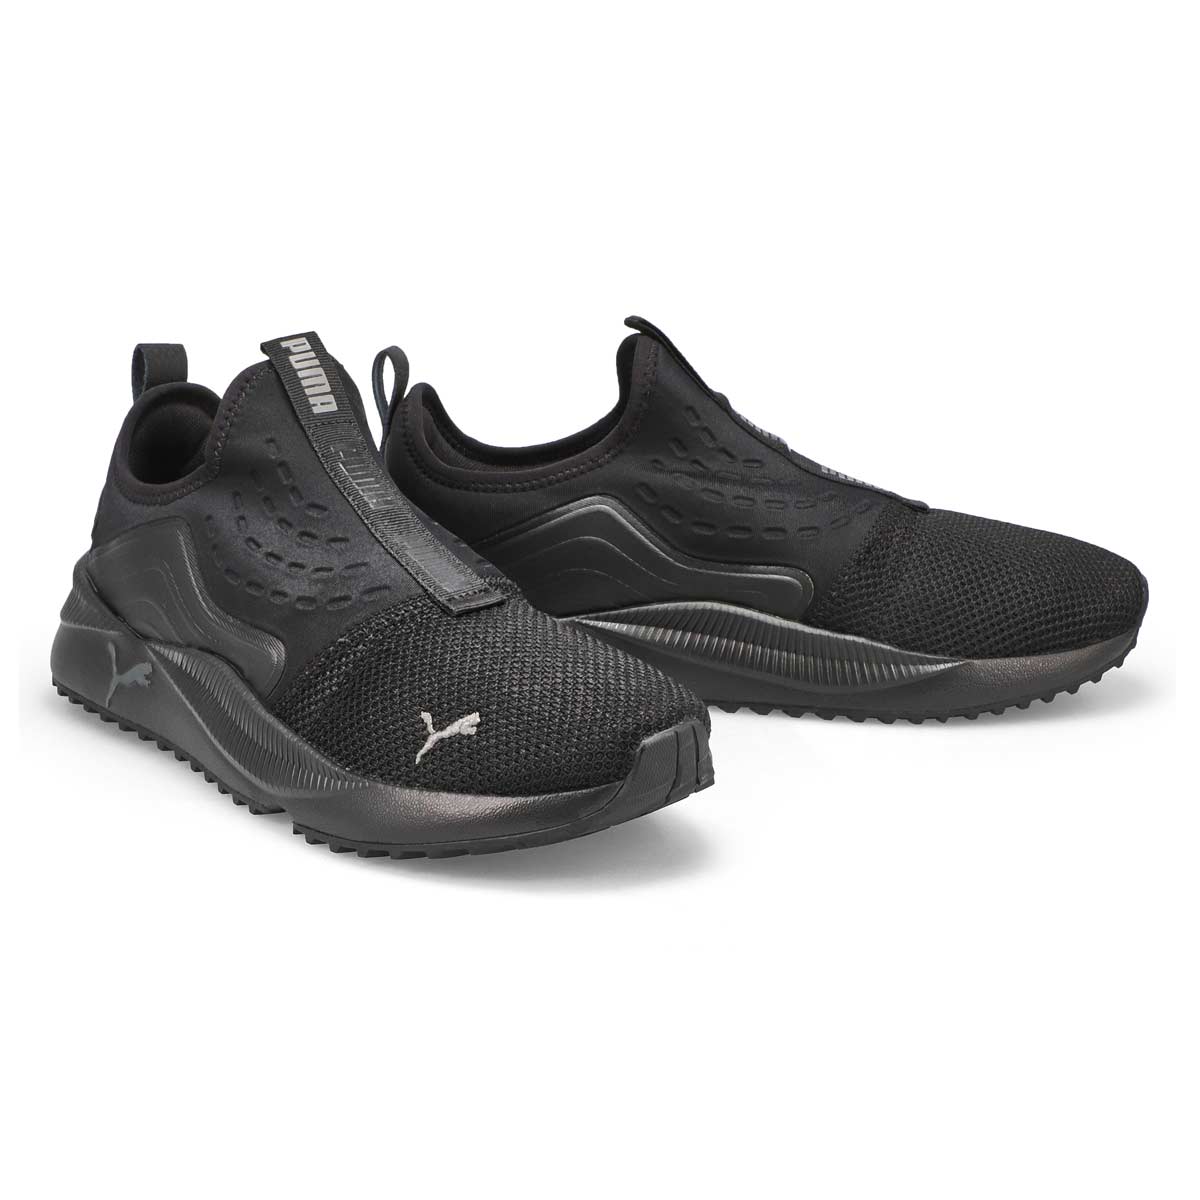 Men's Pacer Future Slip On Sneaker - Black